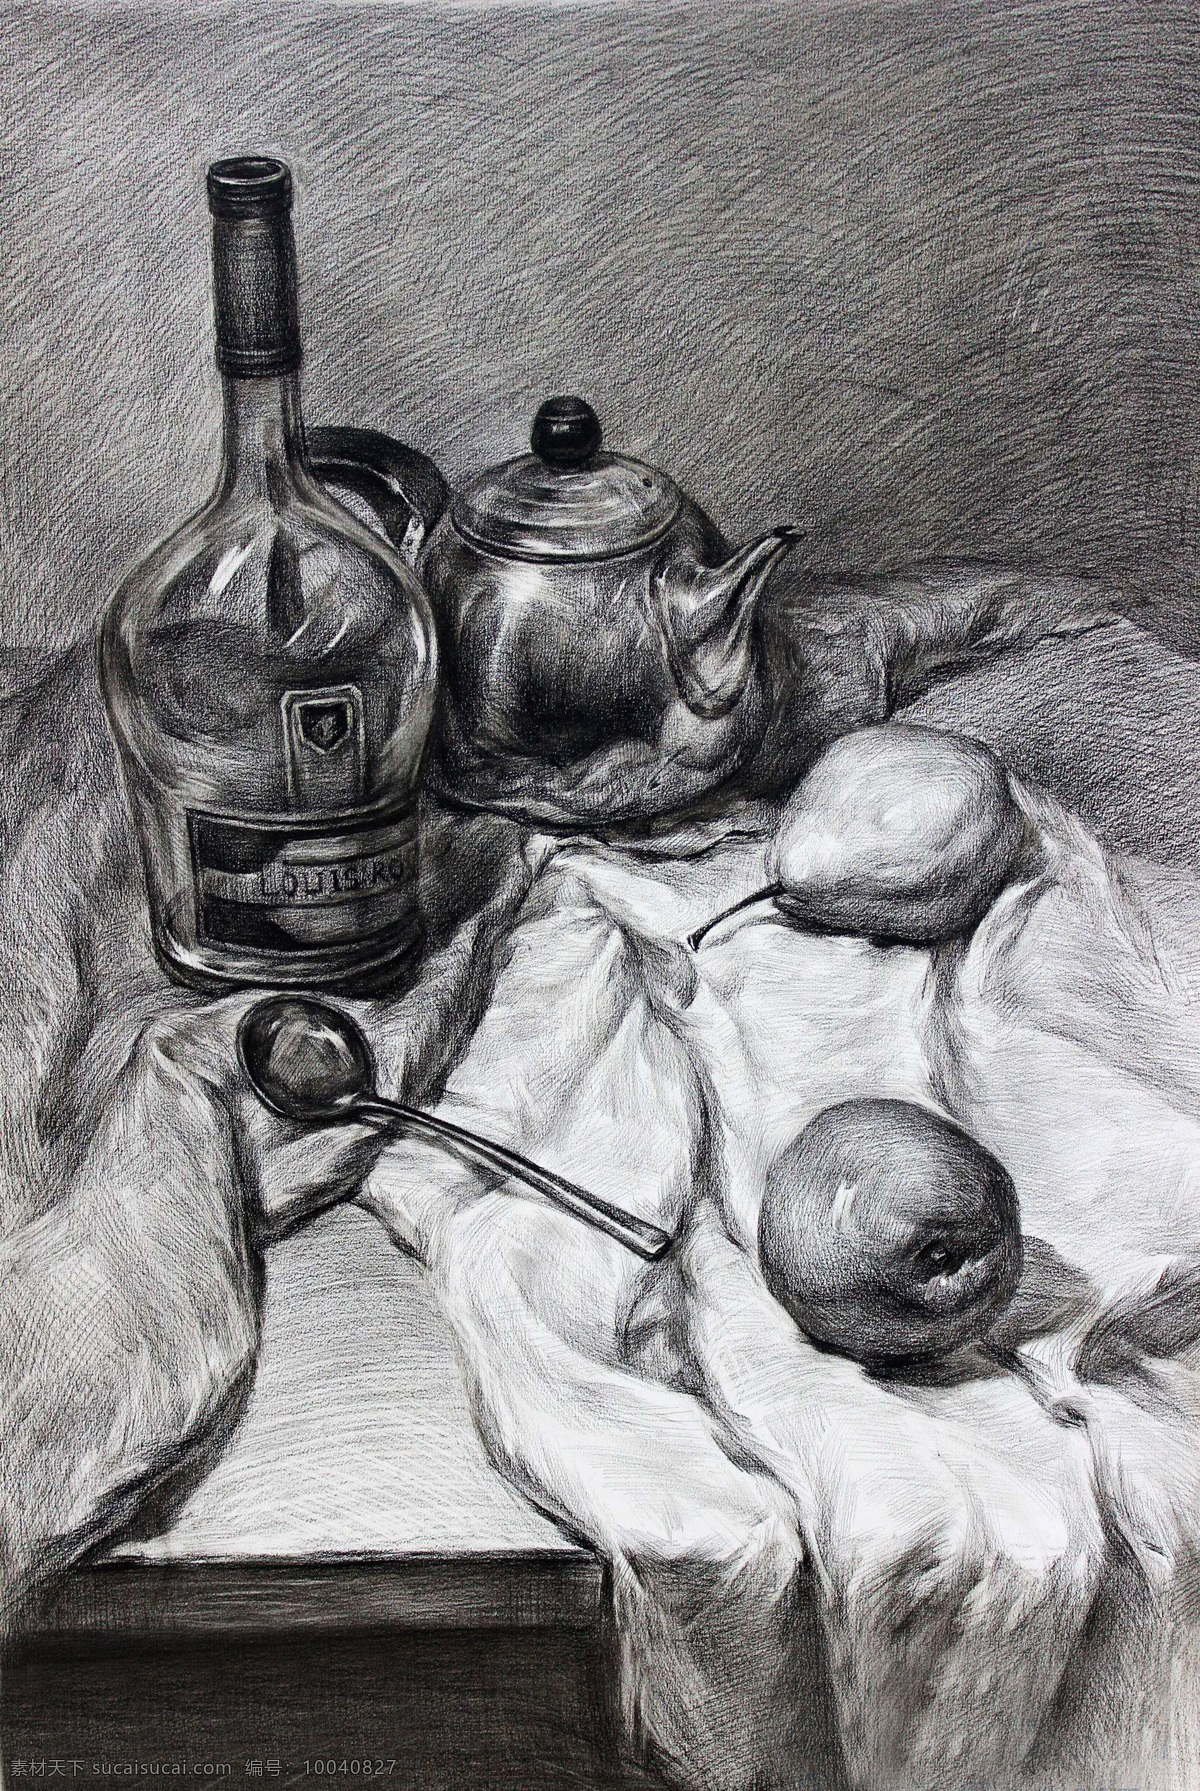 素描 素描静物 静物素描 素描作品 茶壶 酒瓶 梨子 艺术绘画 文化艺术 绘画书法